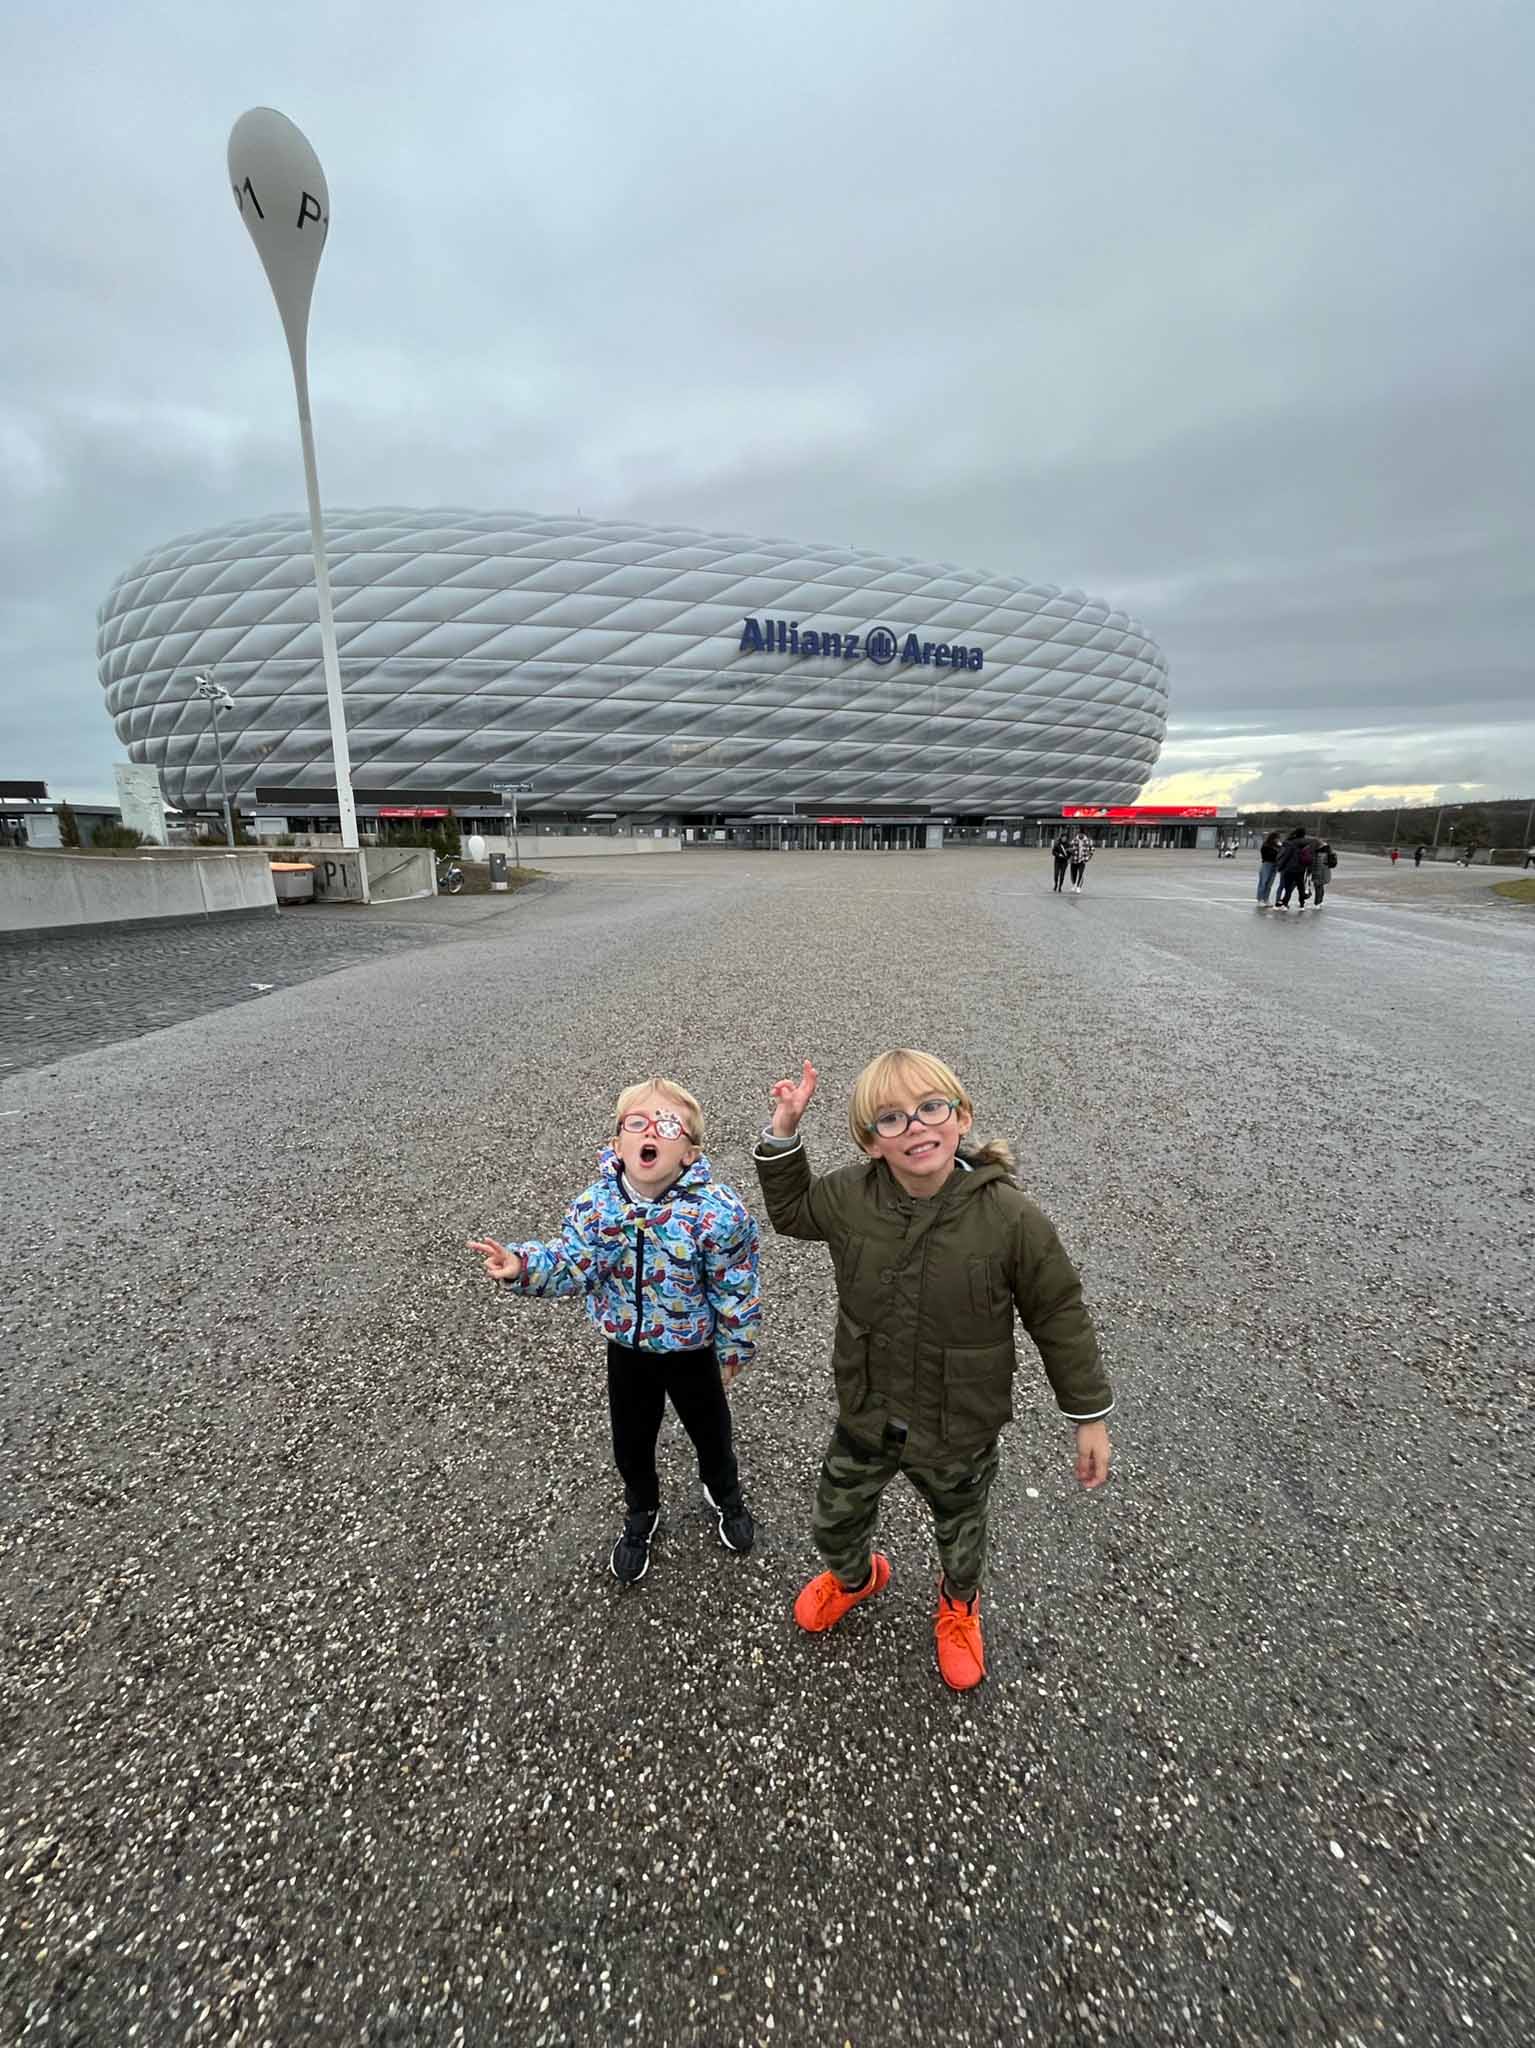 Allianz Arena Munique